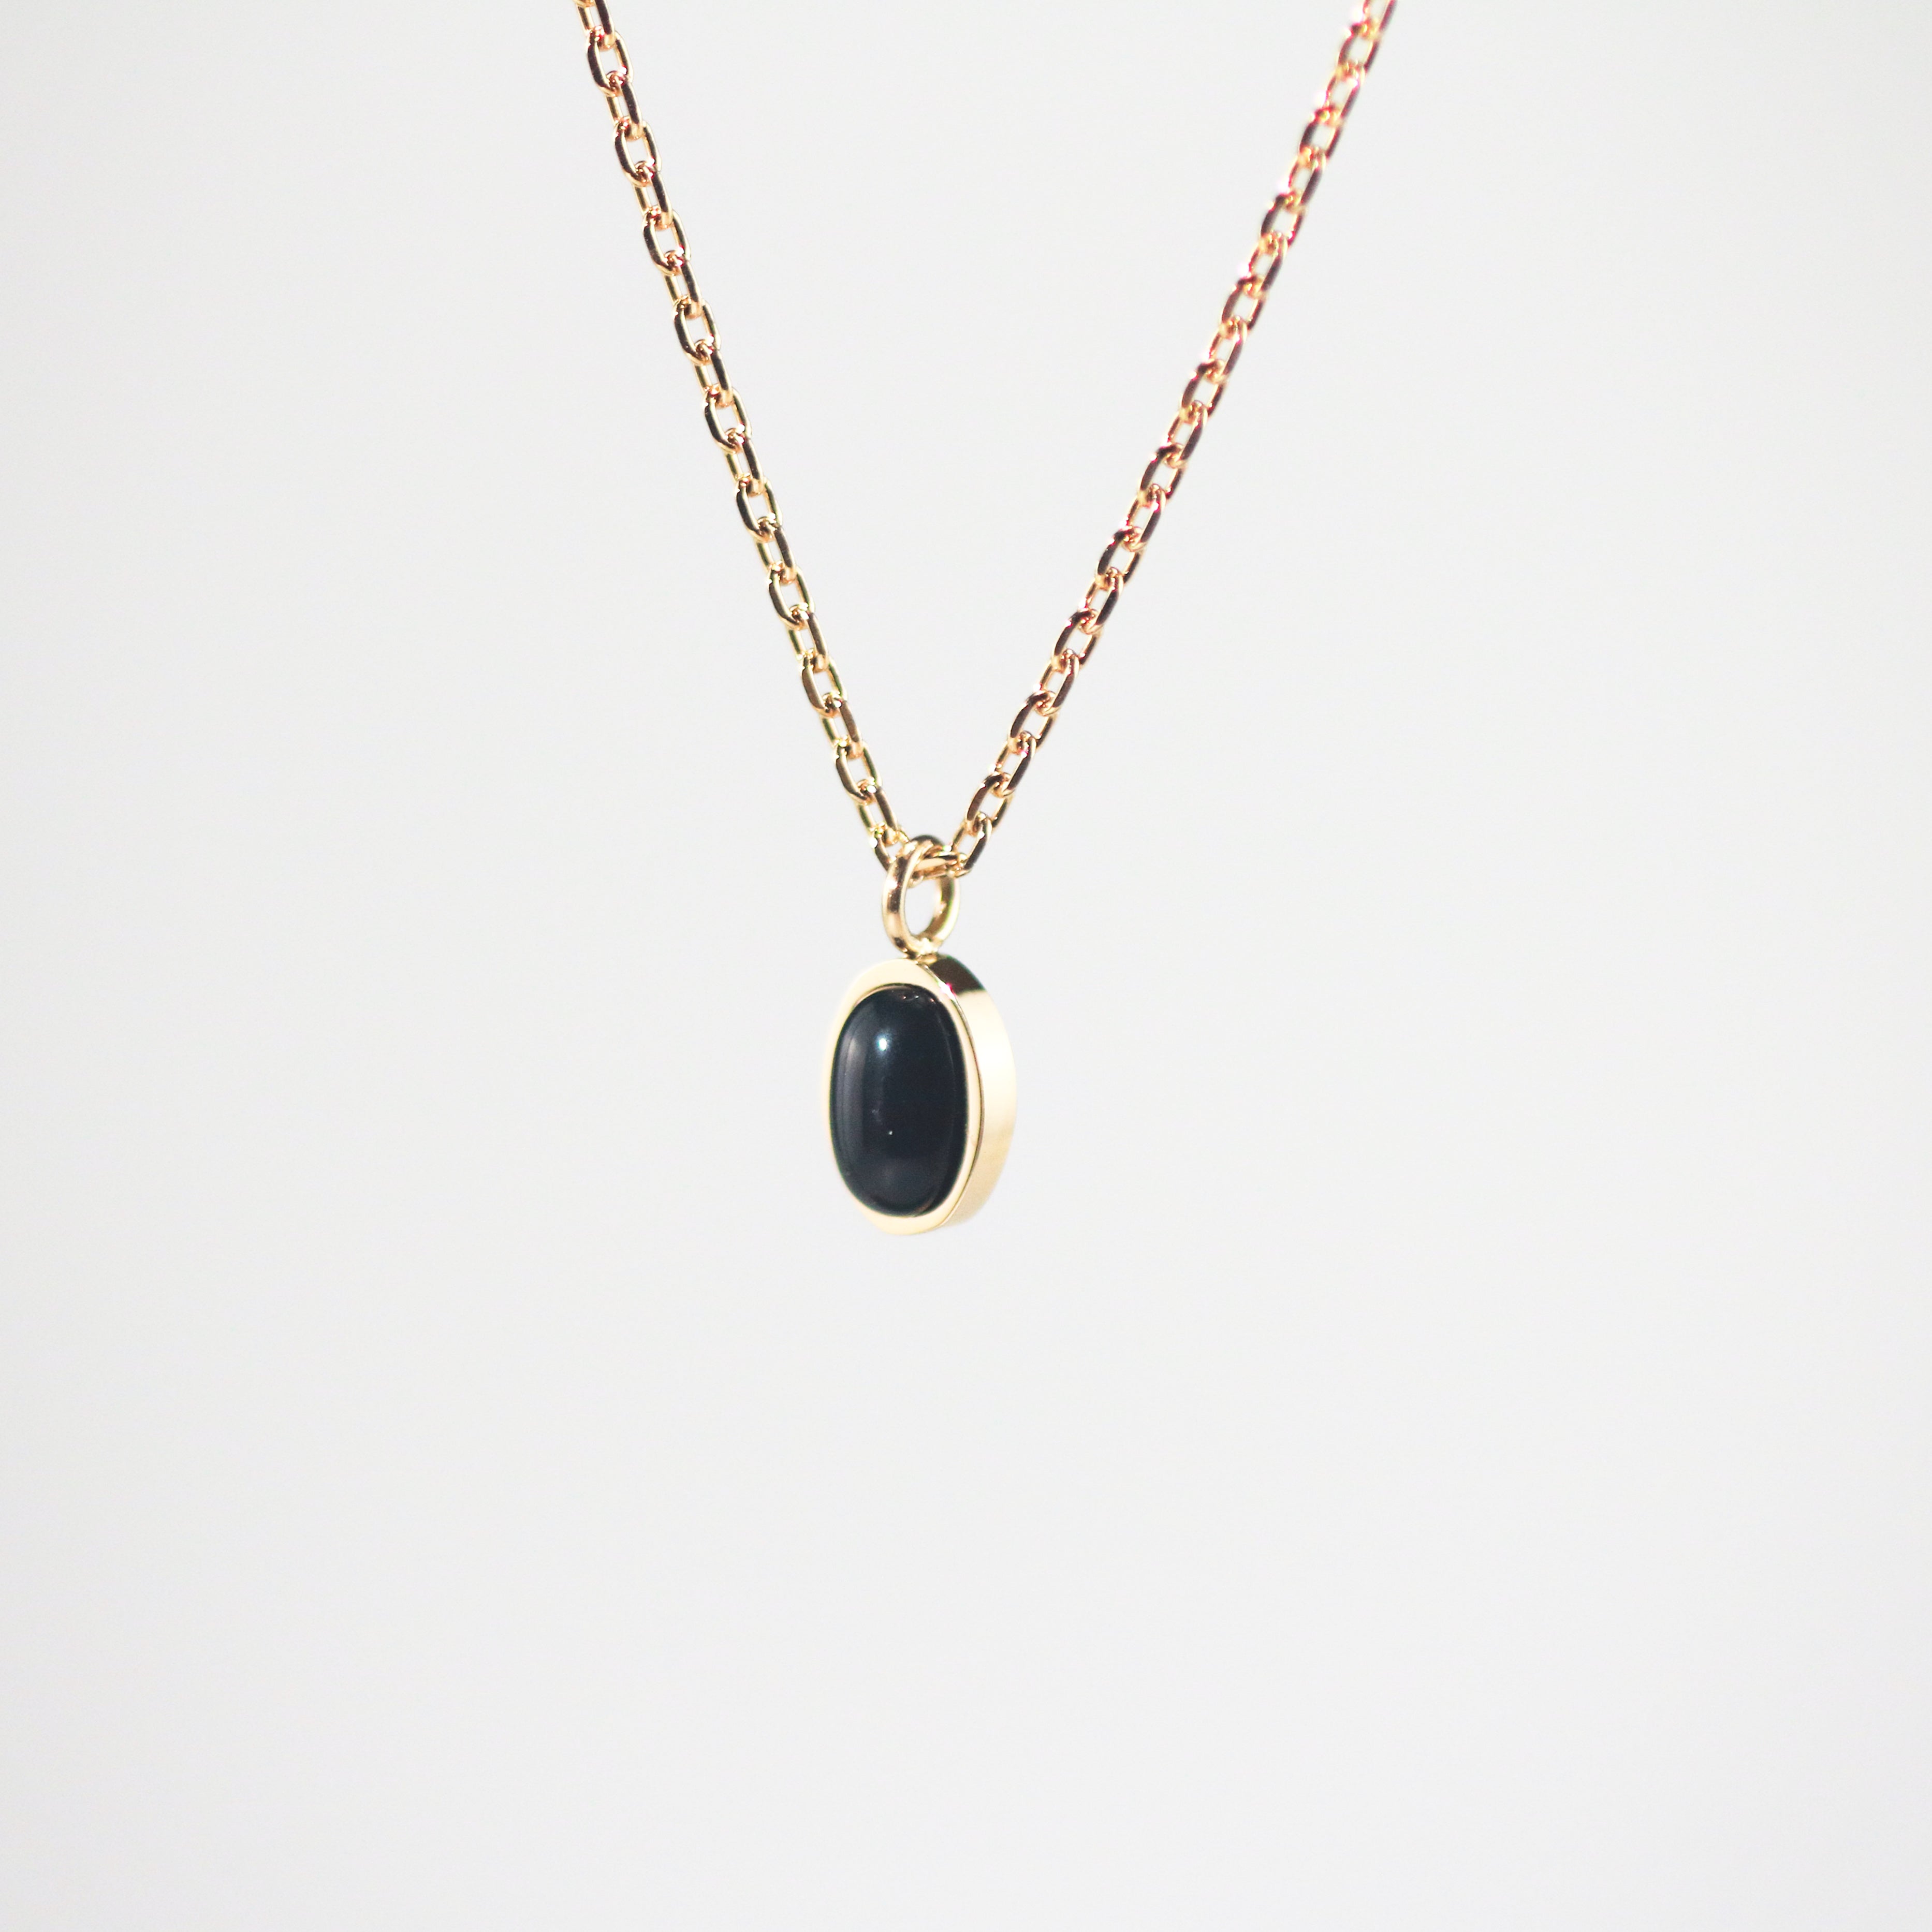 Meideya Jewelry Oval Black Onyx Necklace